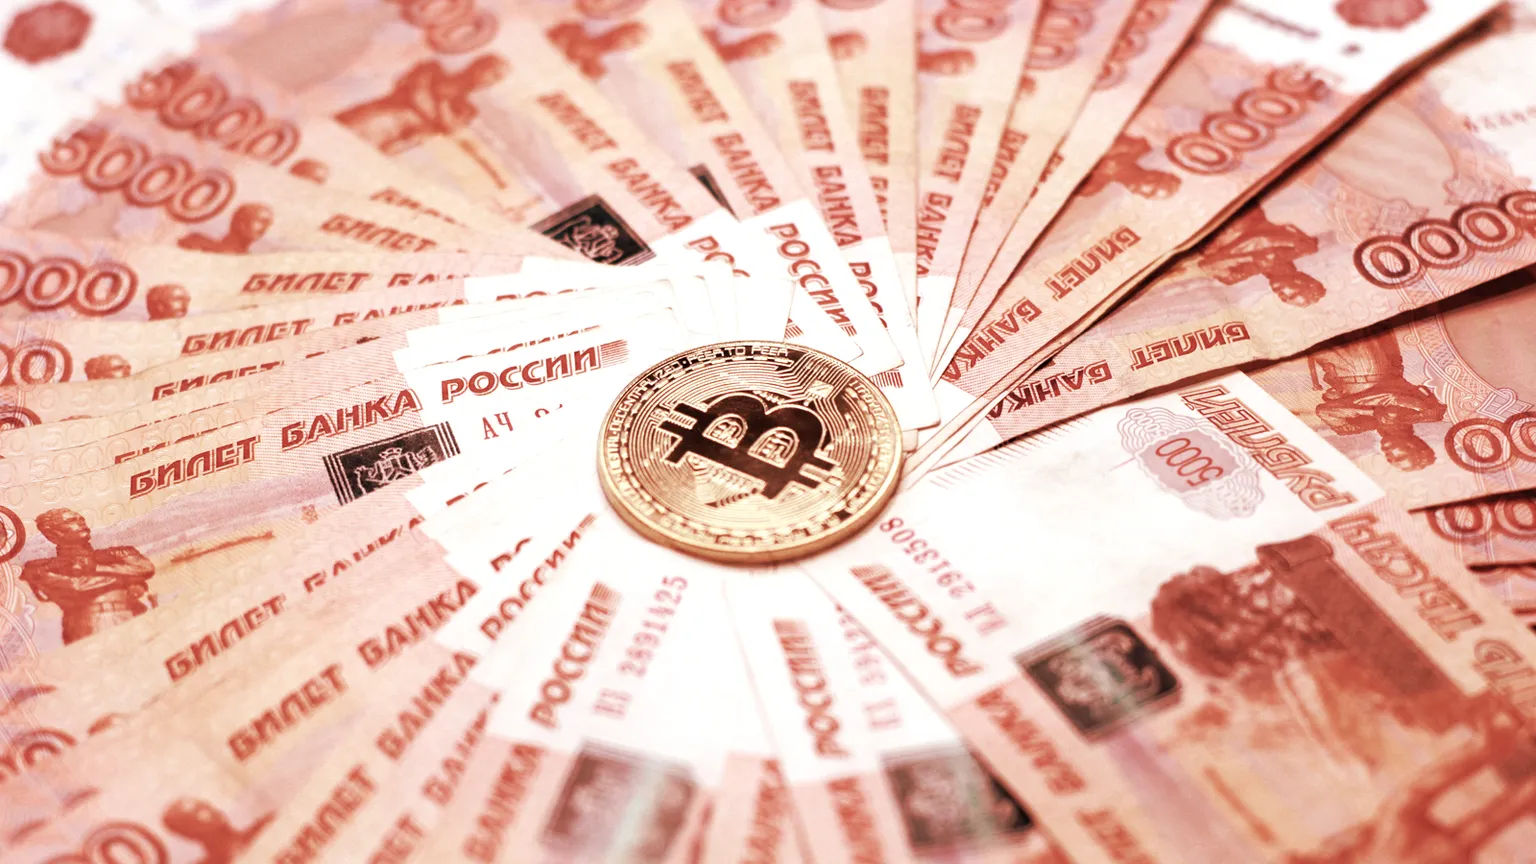 Gobierno de Ucrania Pide Oficialmente a Exchanges de Criptomonedas Que Suspendan Soporte al Rublo de Rusia Image: Shutterstock